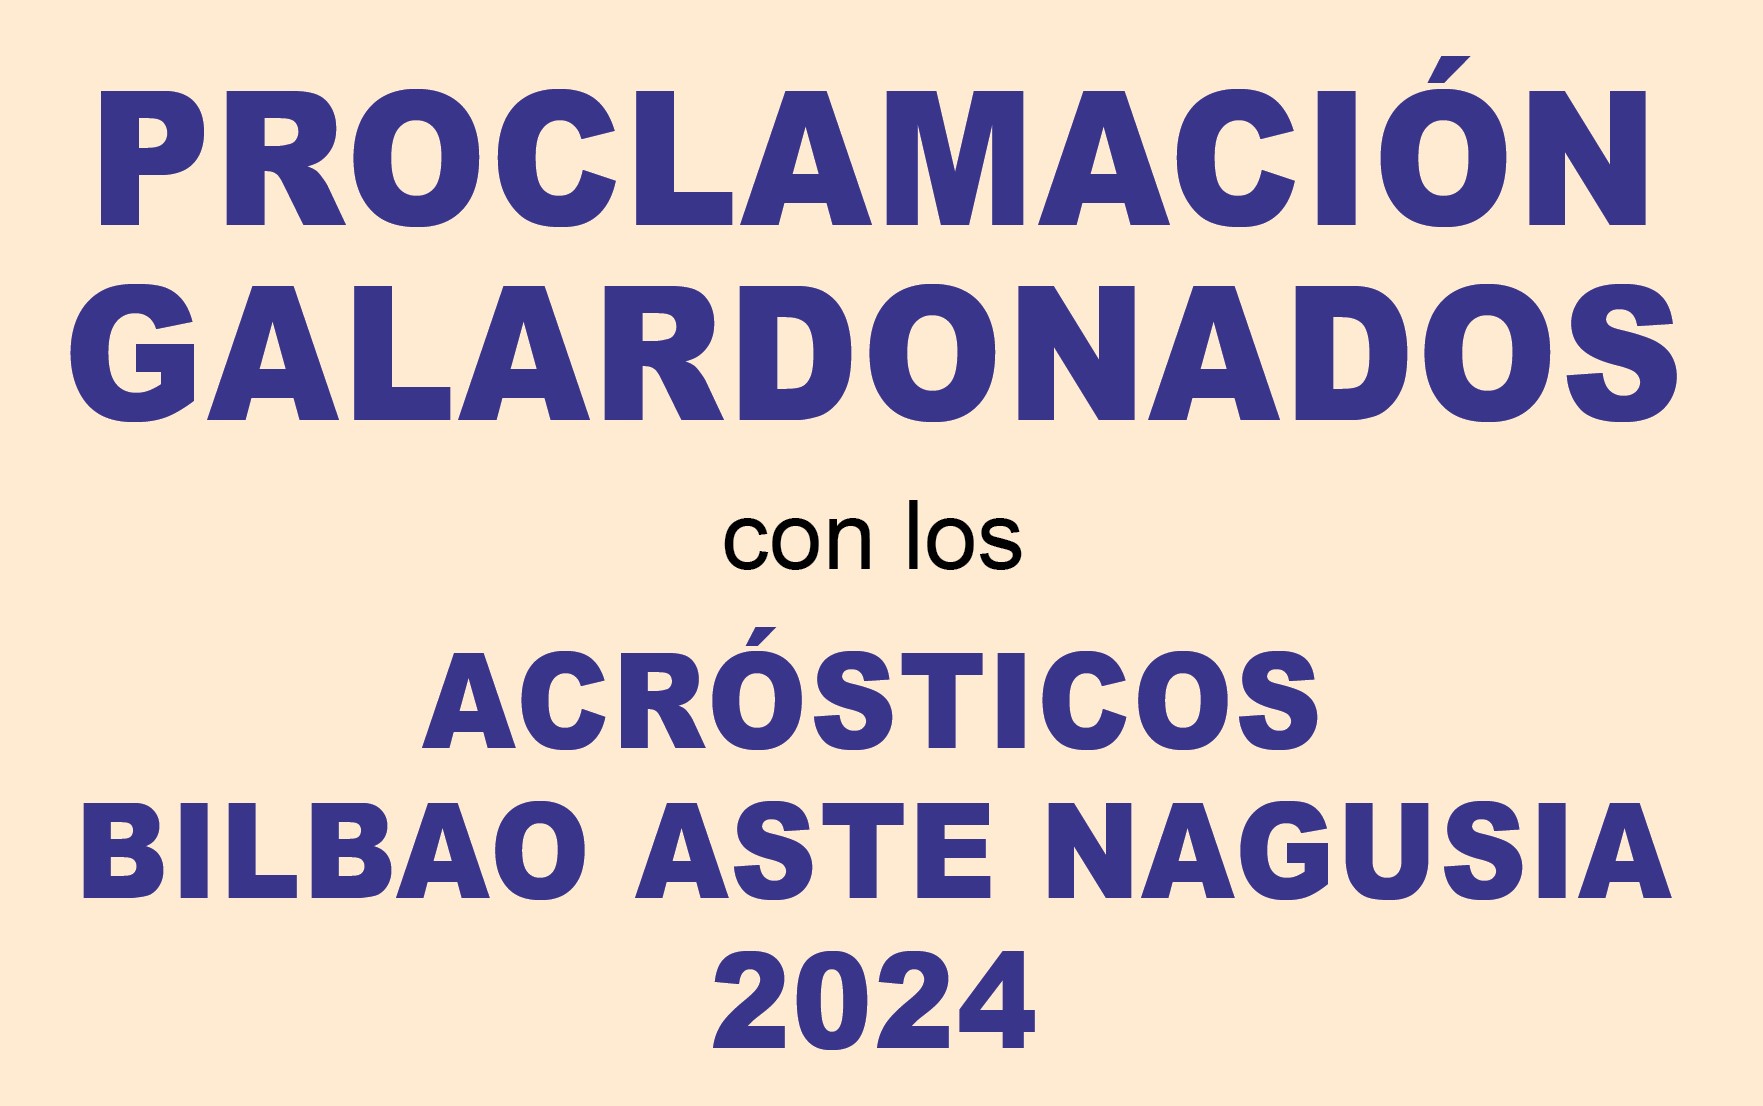 "PROCLAMACIÓN GALARDONADOS con los ACRÓSTICOS de BILBAO ASTE NAGUSIA 2024"